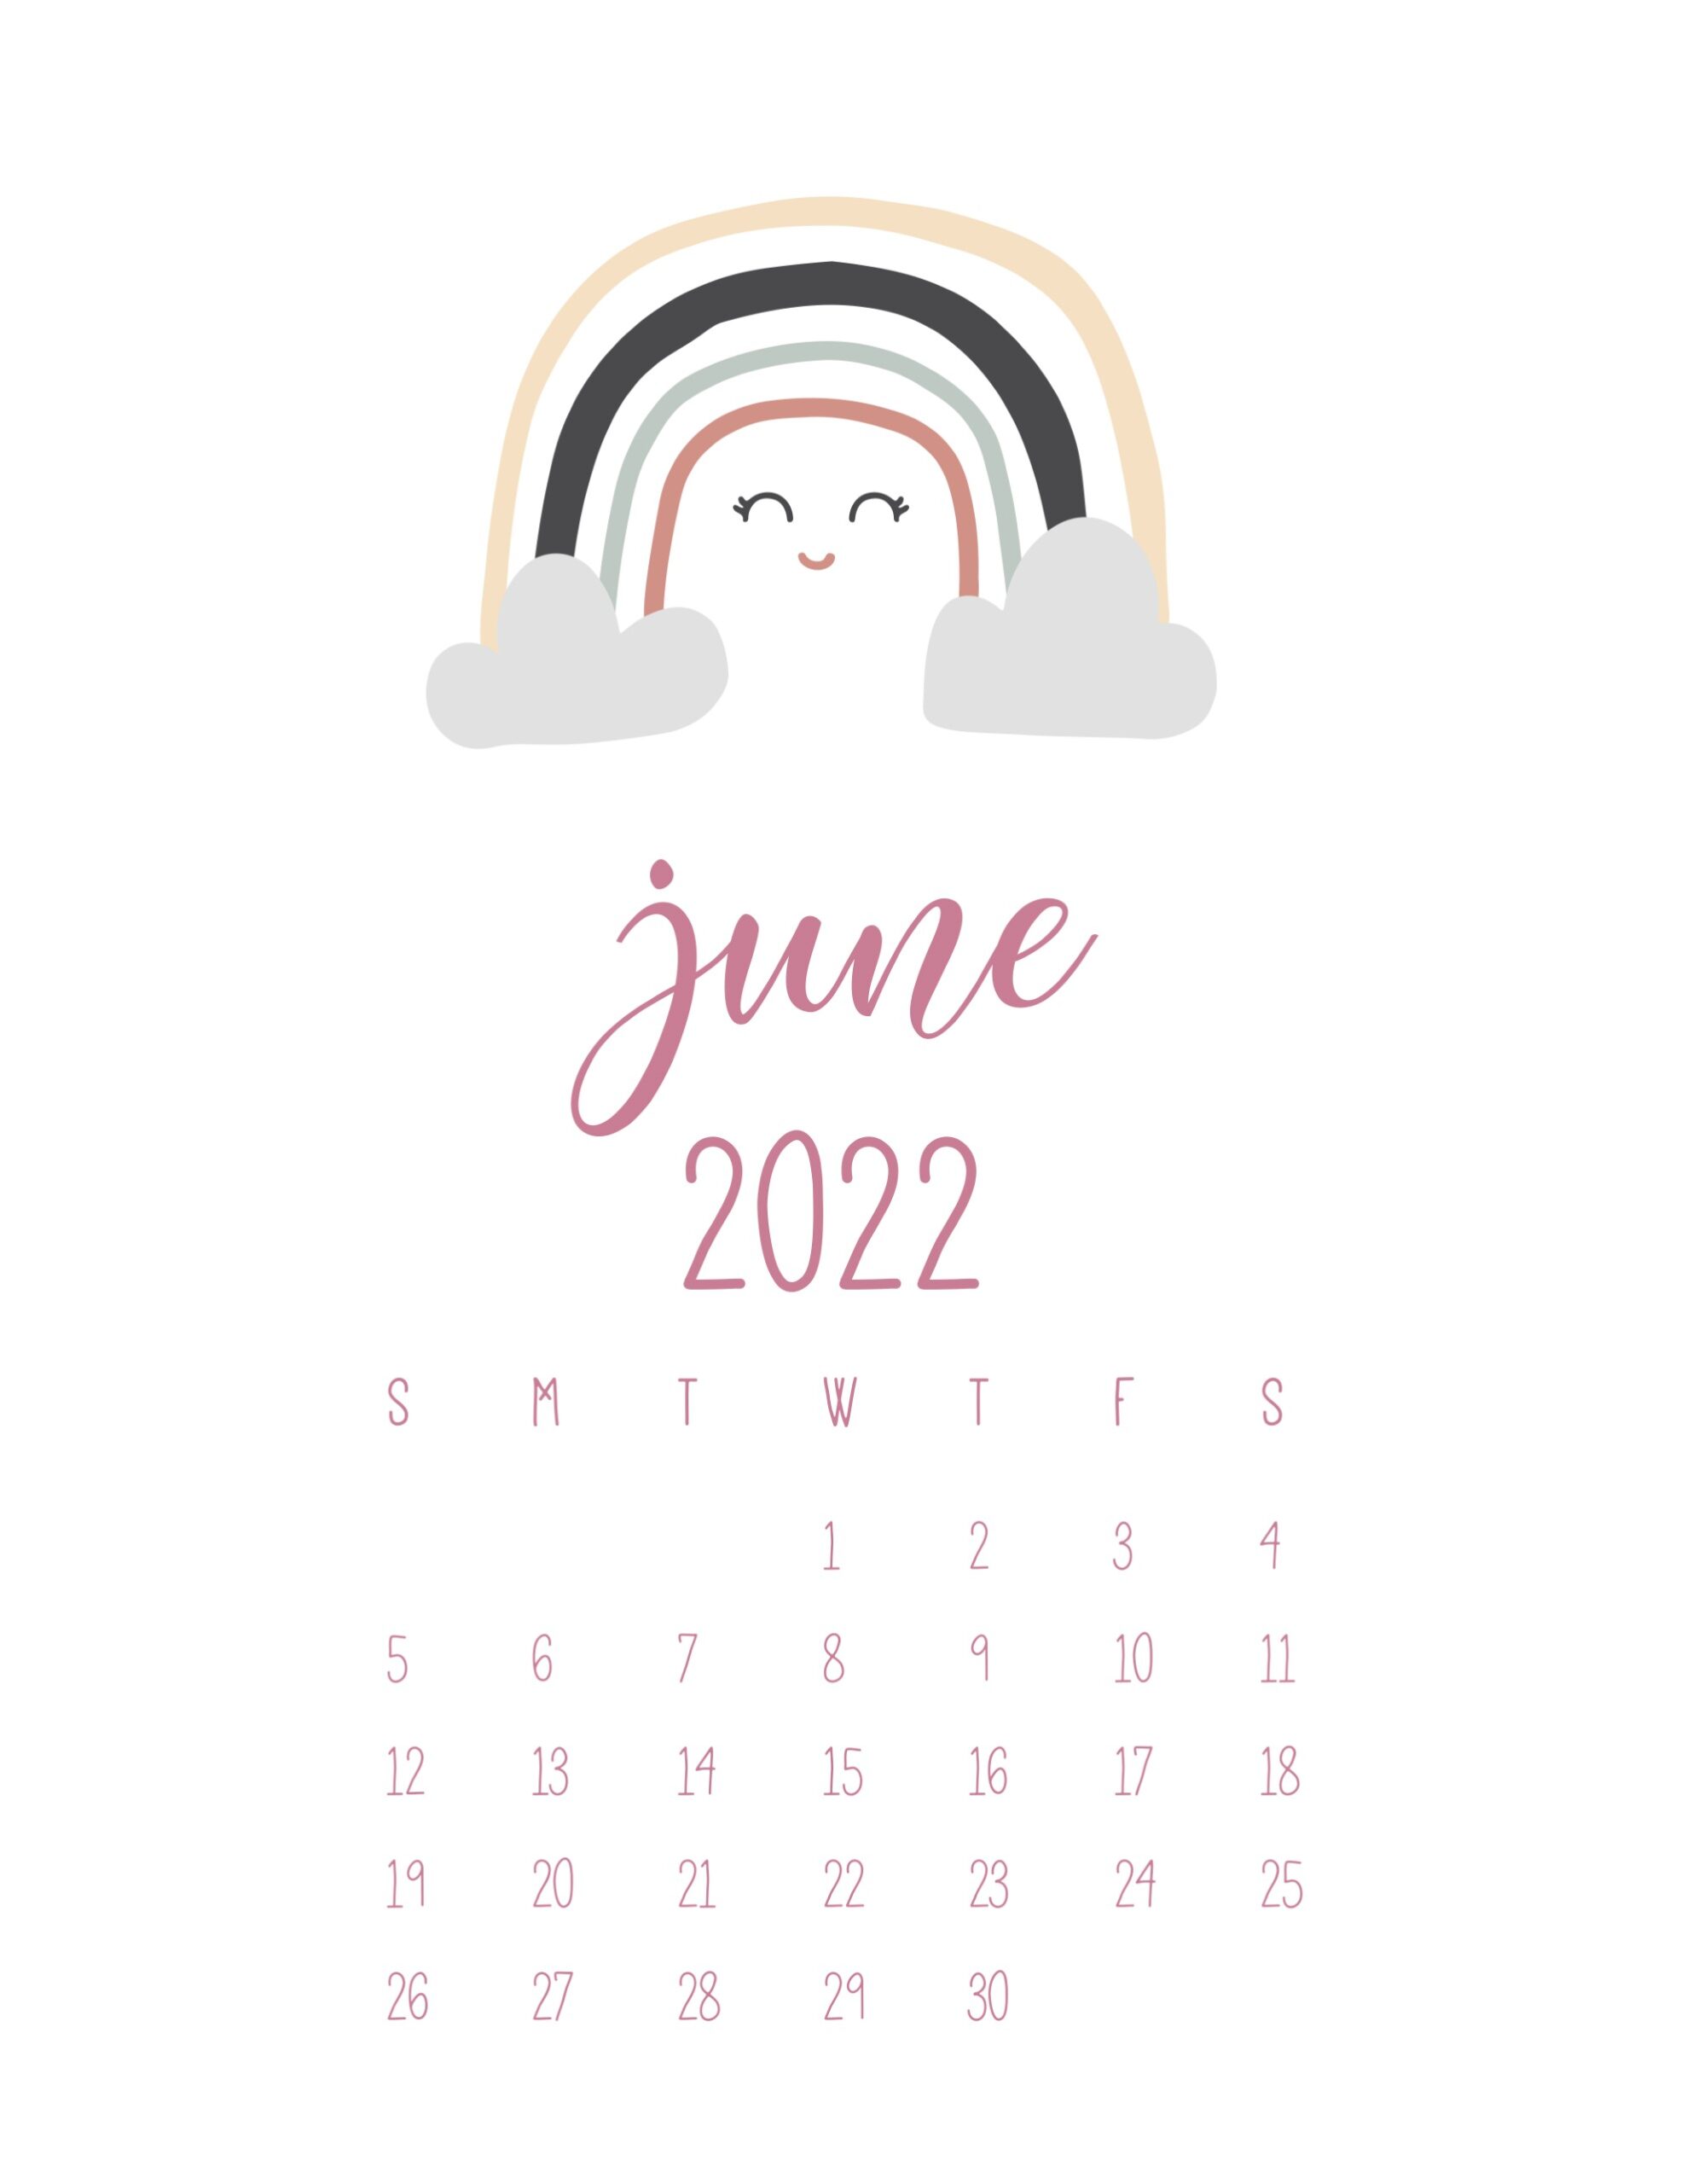 calendario 2022 arco iris junho